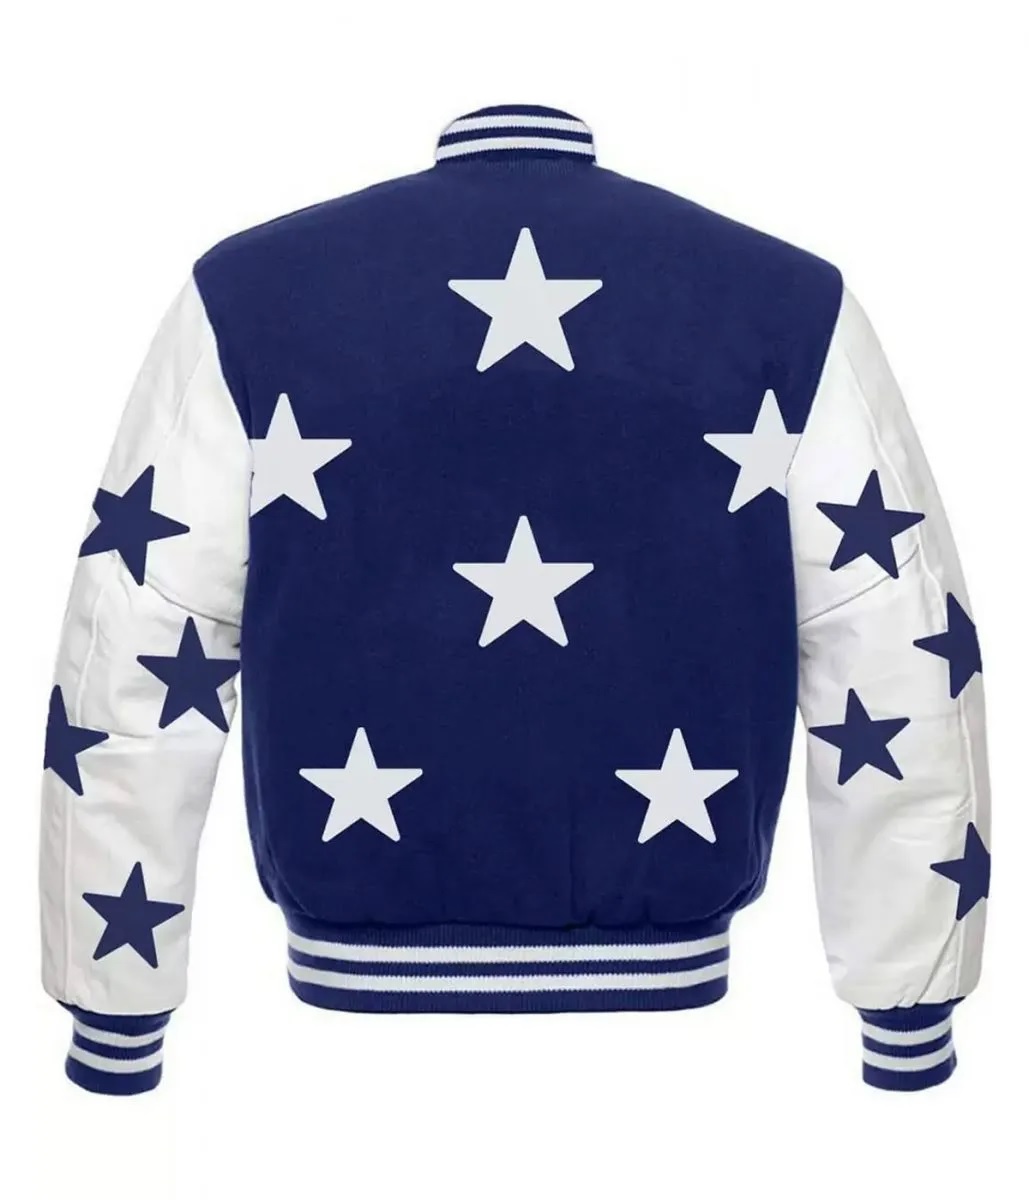 Dallas Cowboys Stars Varsity Royal Blue and White Jacket